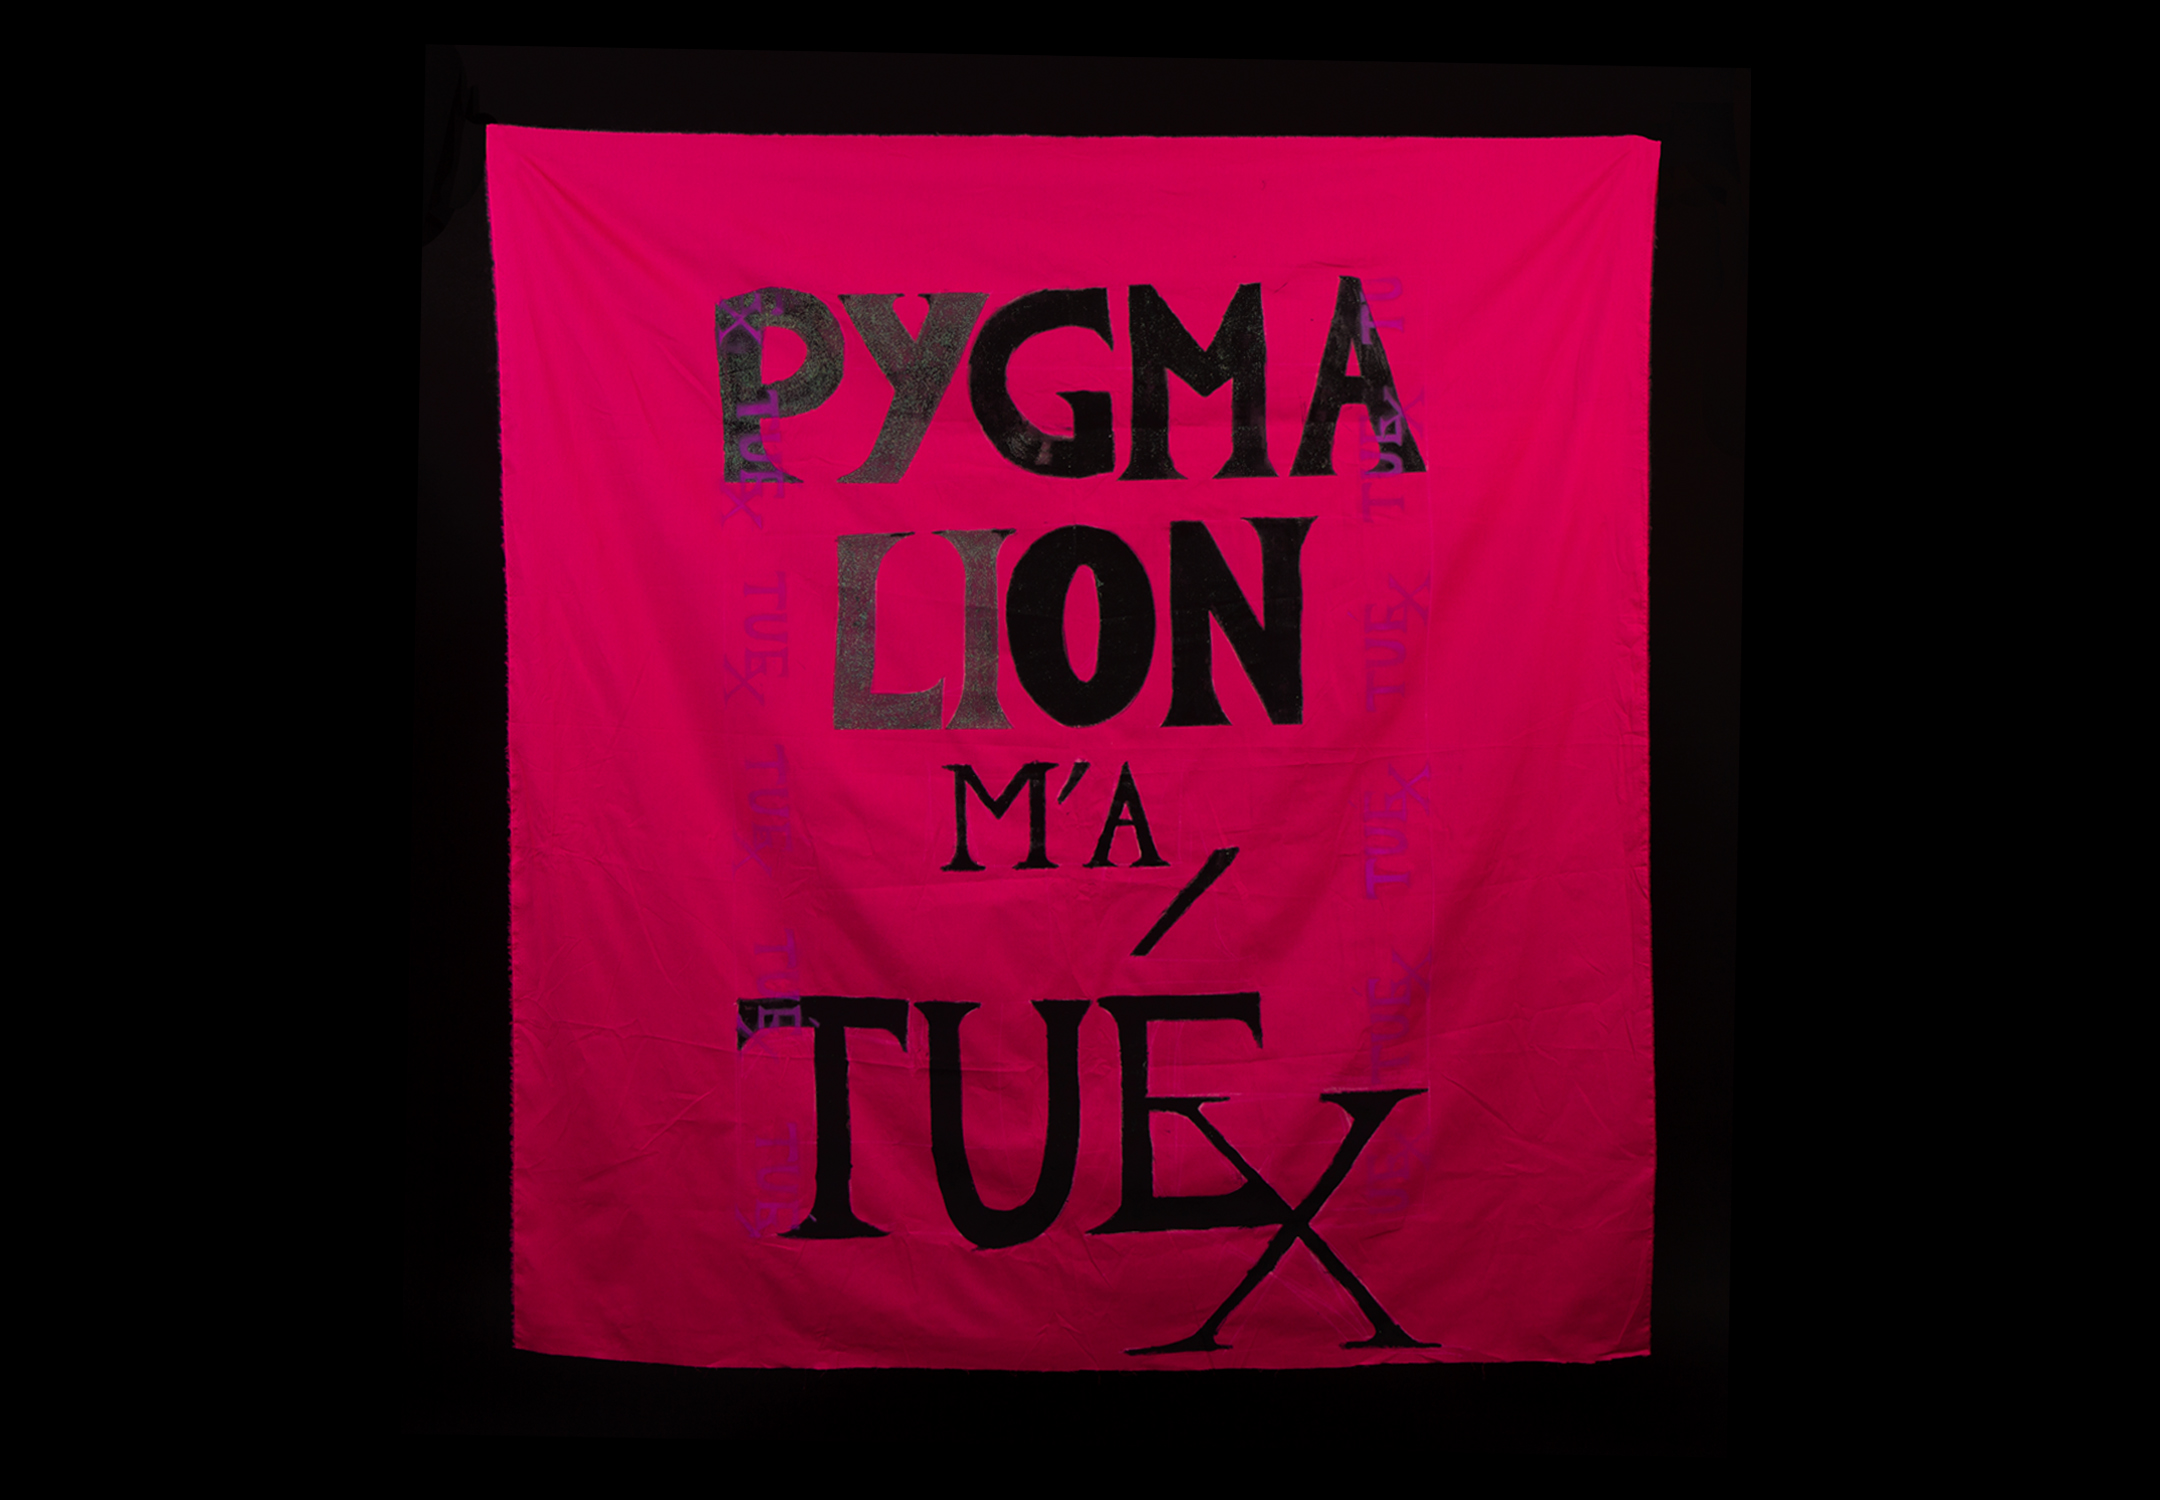 Banderole en tissu rose vif, de format carré. Sur celle-ci sont peints à l'encre noire les mots “Pygmalion m'a tuÉX". Le É et le X sont liés.